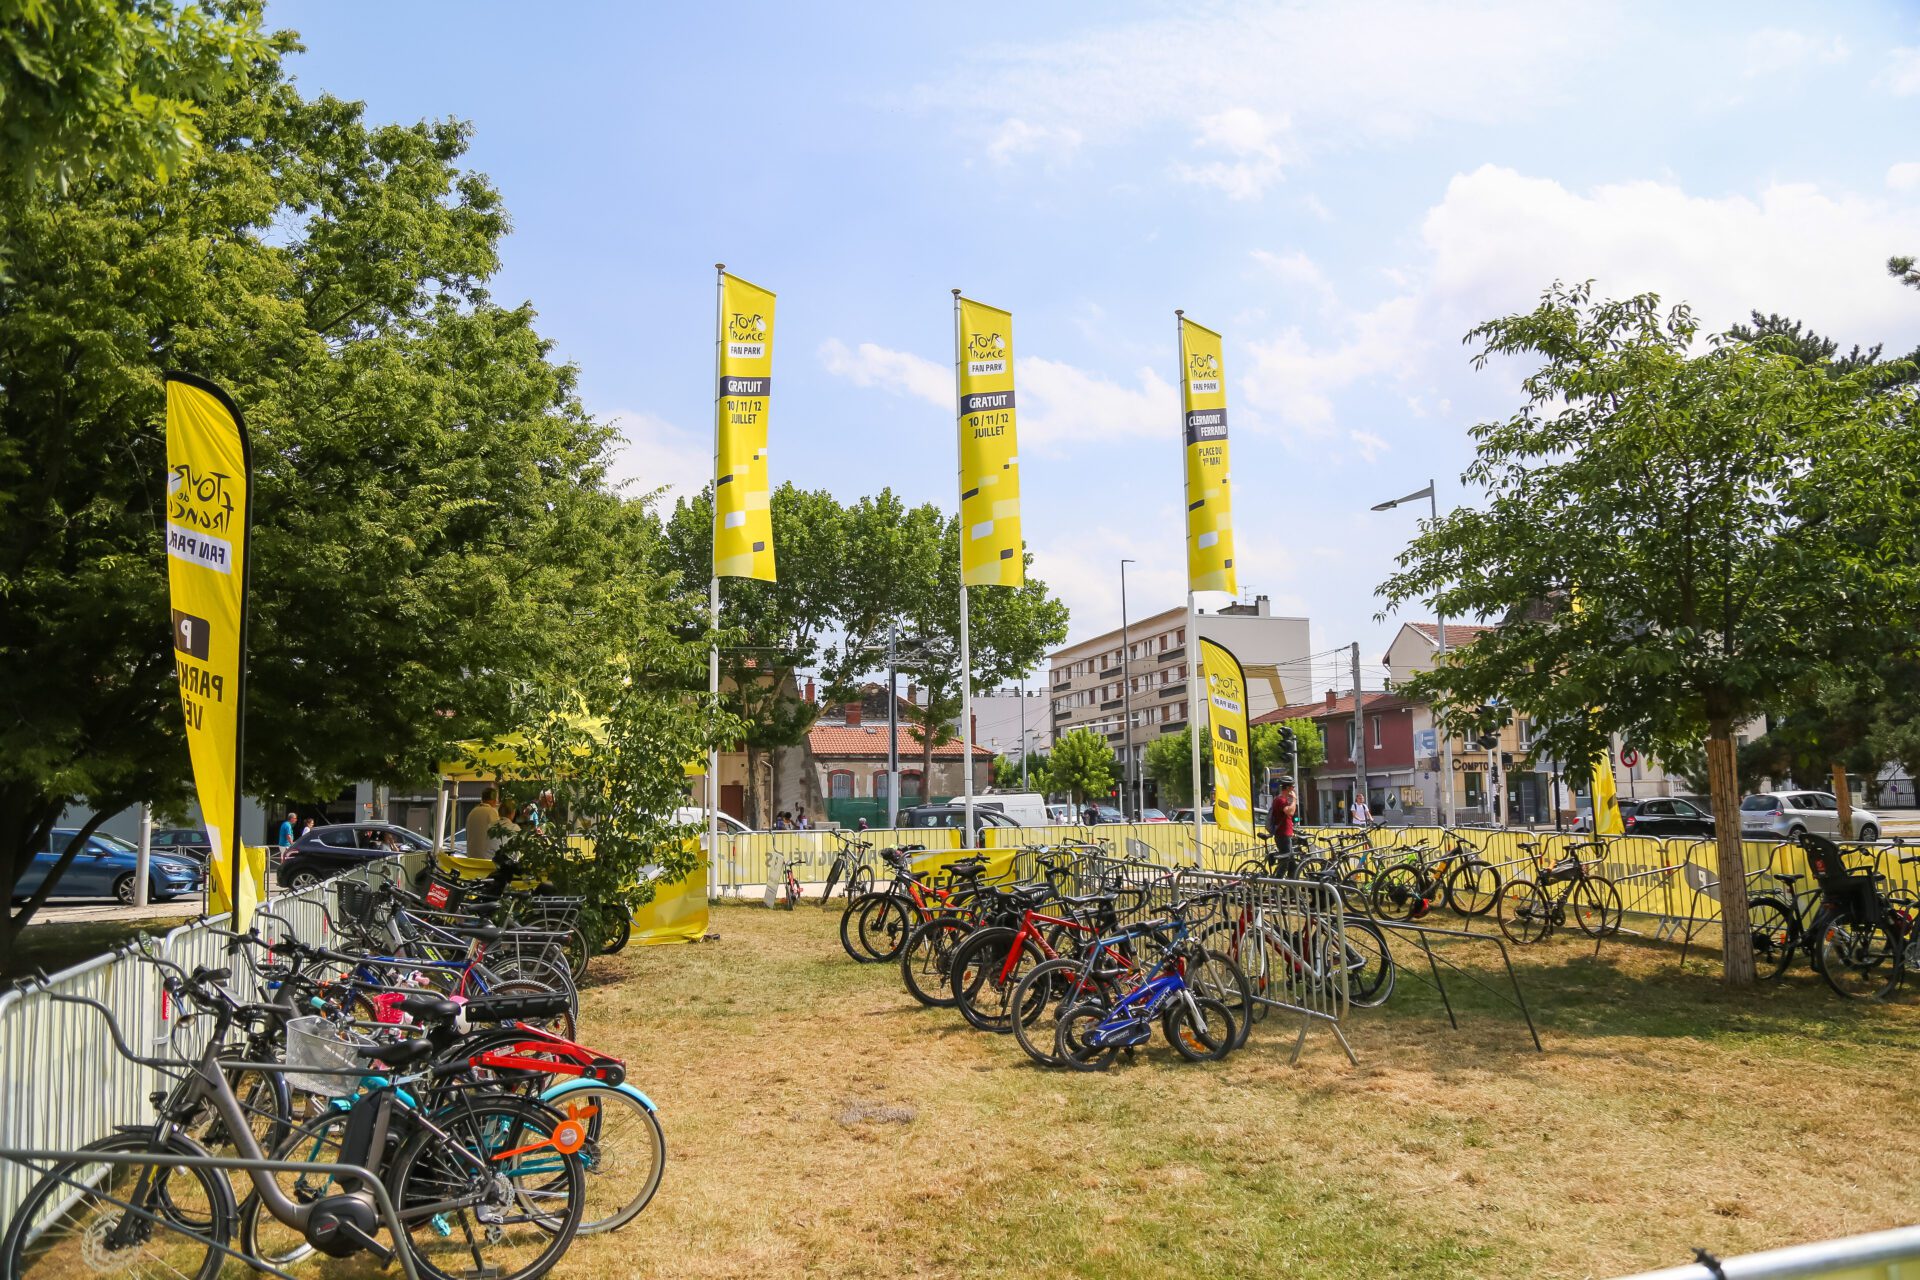 Comment le Tour de France veut décarboner son événement Ecologie Mode Vert Ecolosport